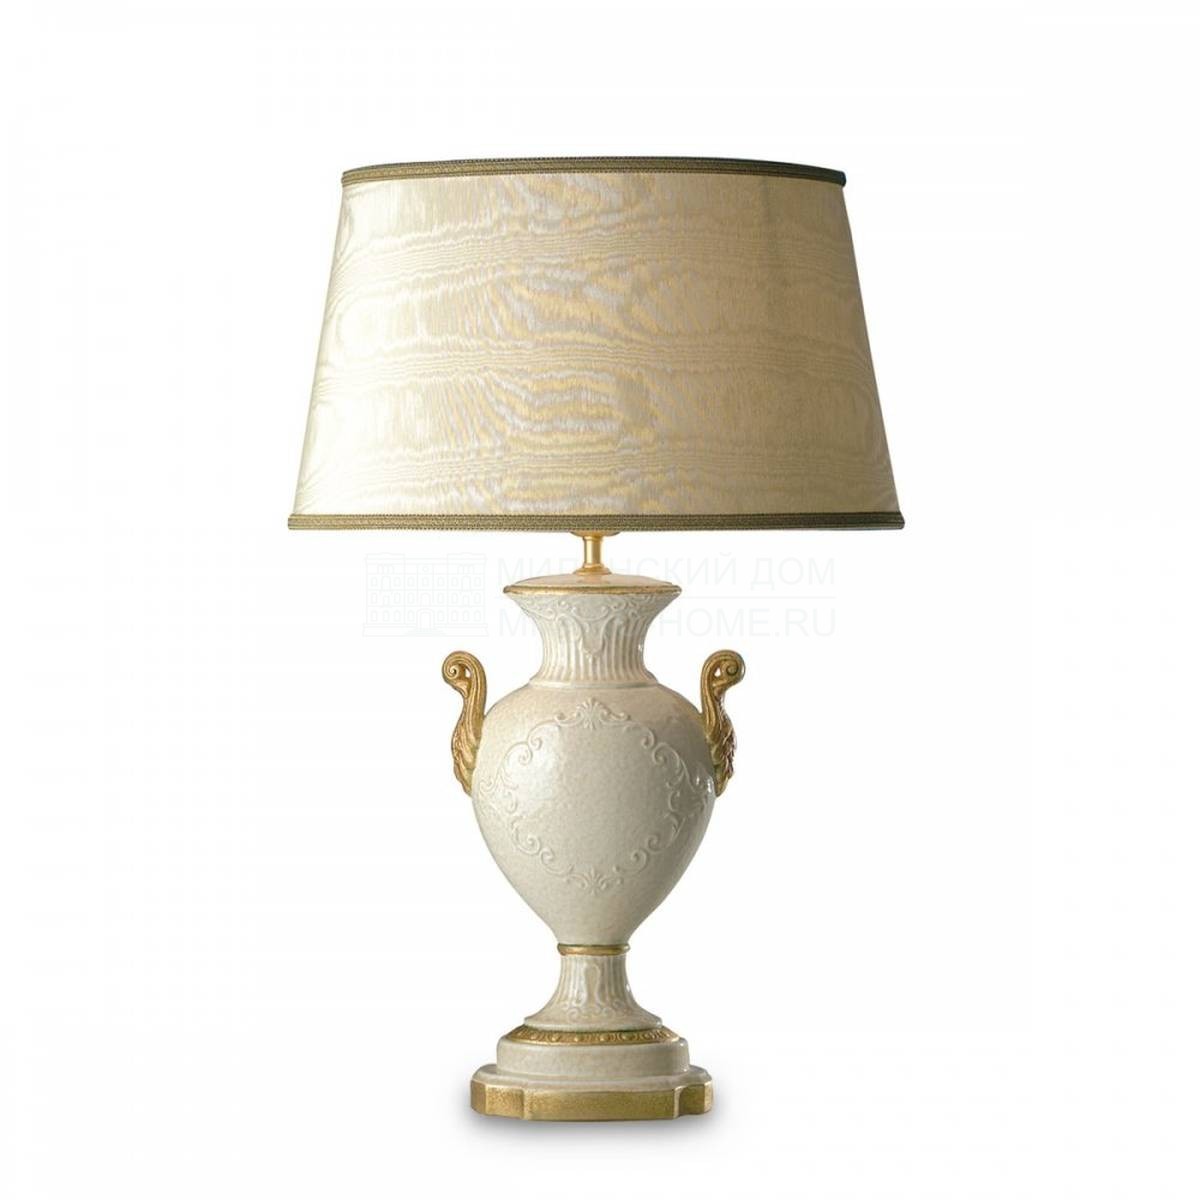 Настольная лампа Elba table lamp из Италии фабрики MARIONI